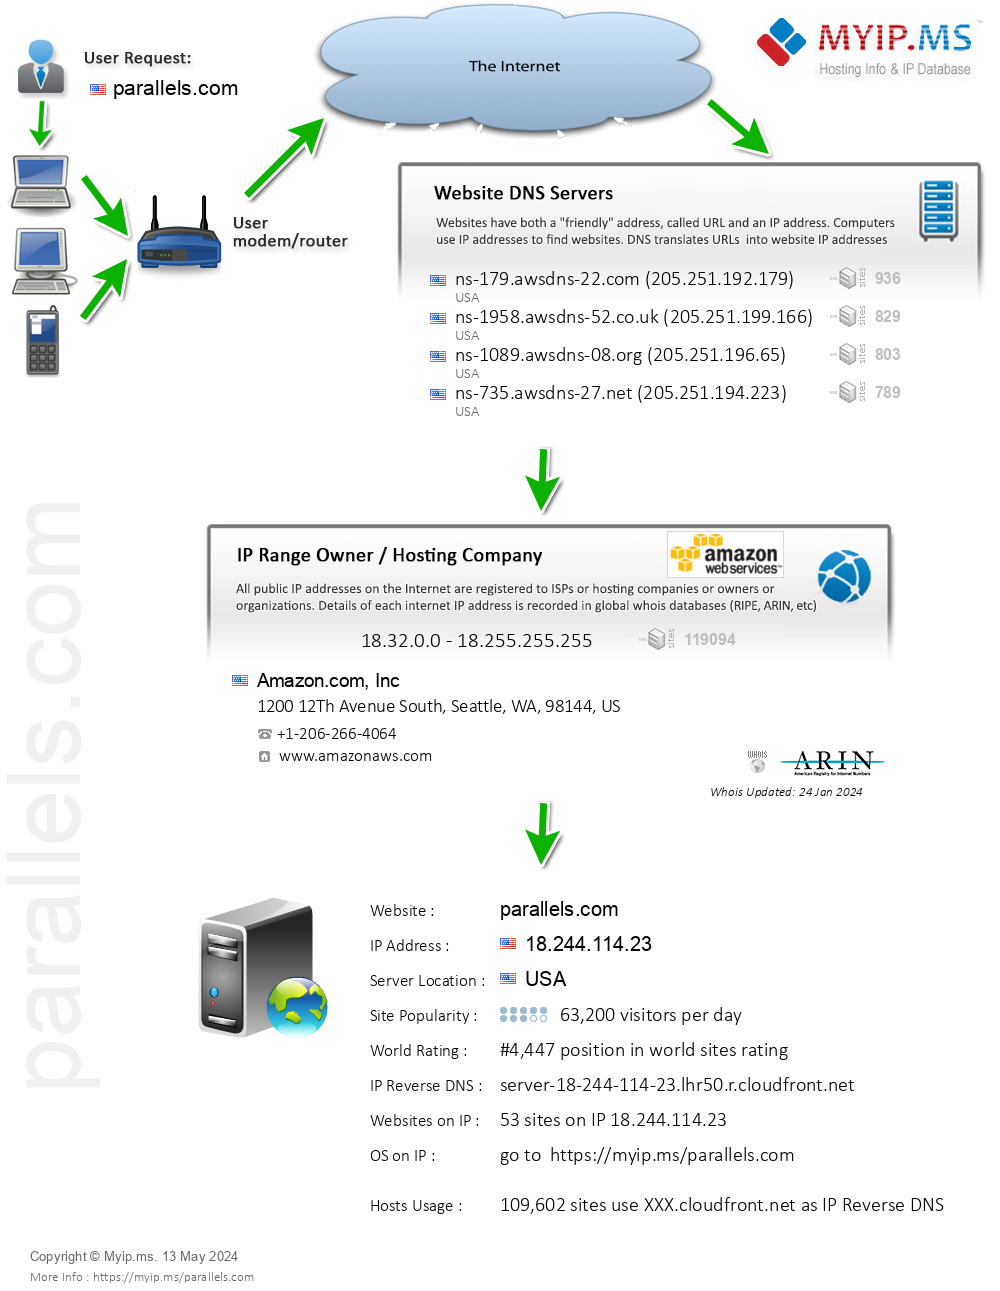 Parallels.com - Website Hosting Visual IP Diagram